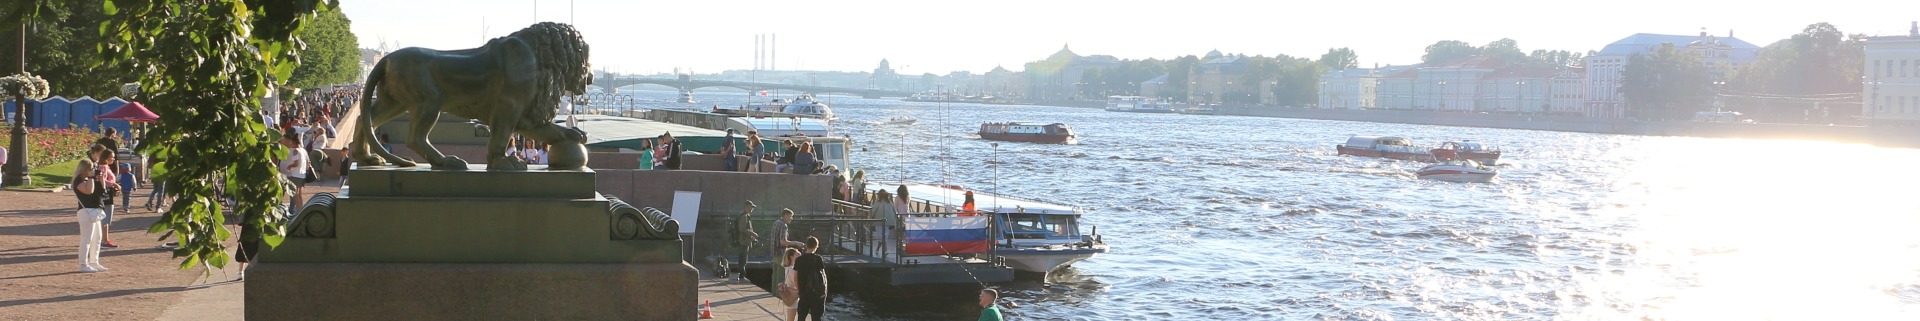 полное расписание водных экскурсий и прогулок по рекам и каналам Санкт-Петербурга